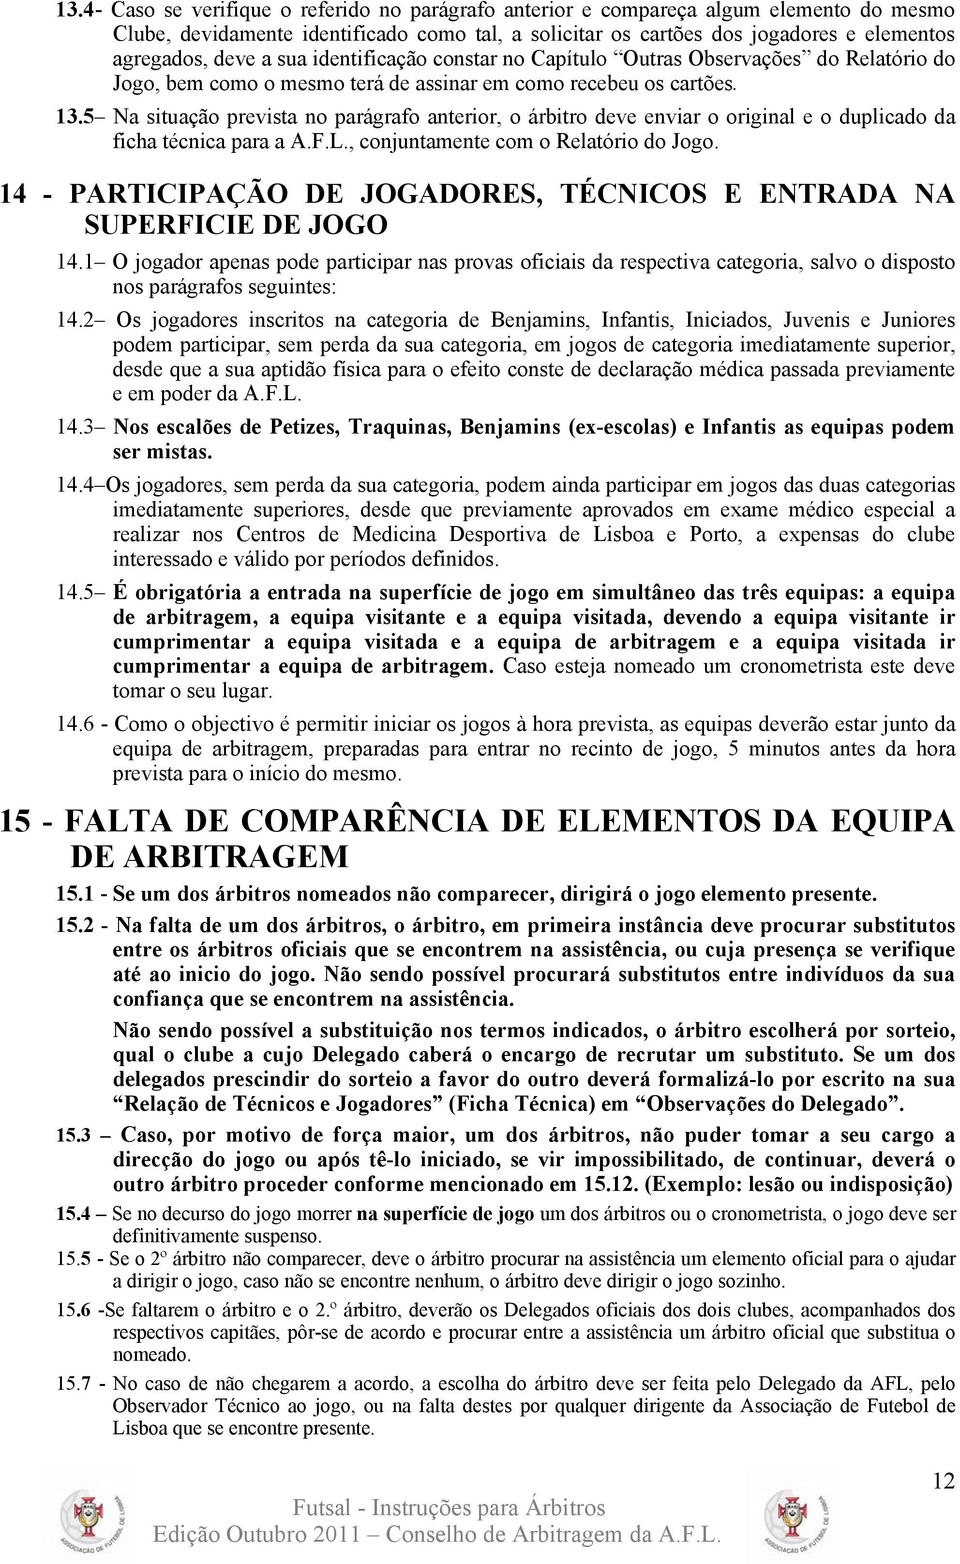 5 Na situação prevista no parágrafo anterior, o árbitro deve enviar o original e o duplicado da ficha técnica para a A.F.L., conjuntamente com o Relatório do Jogo.